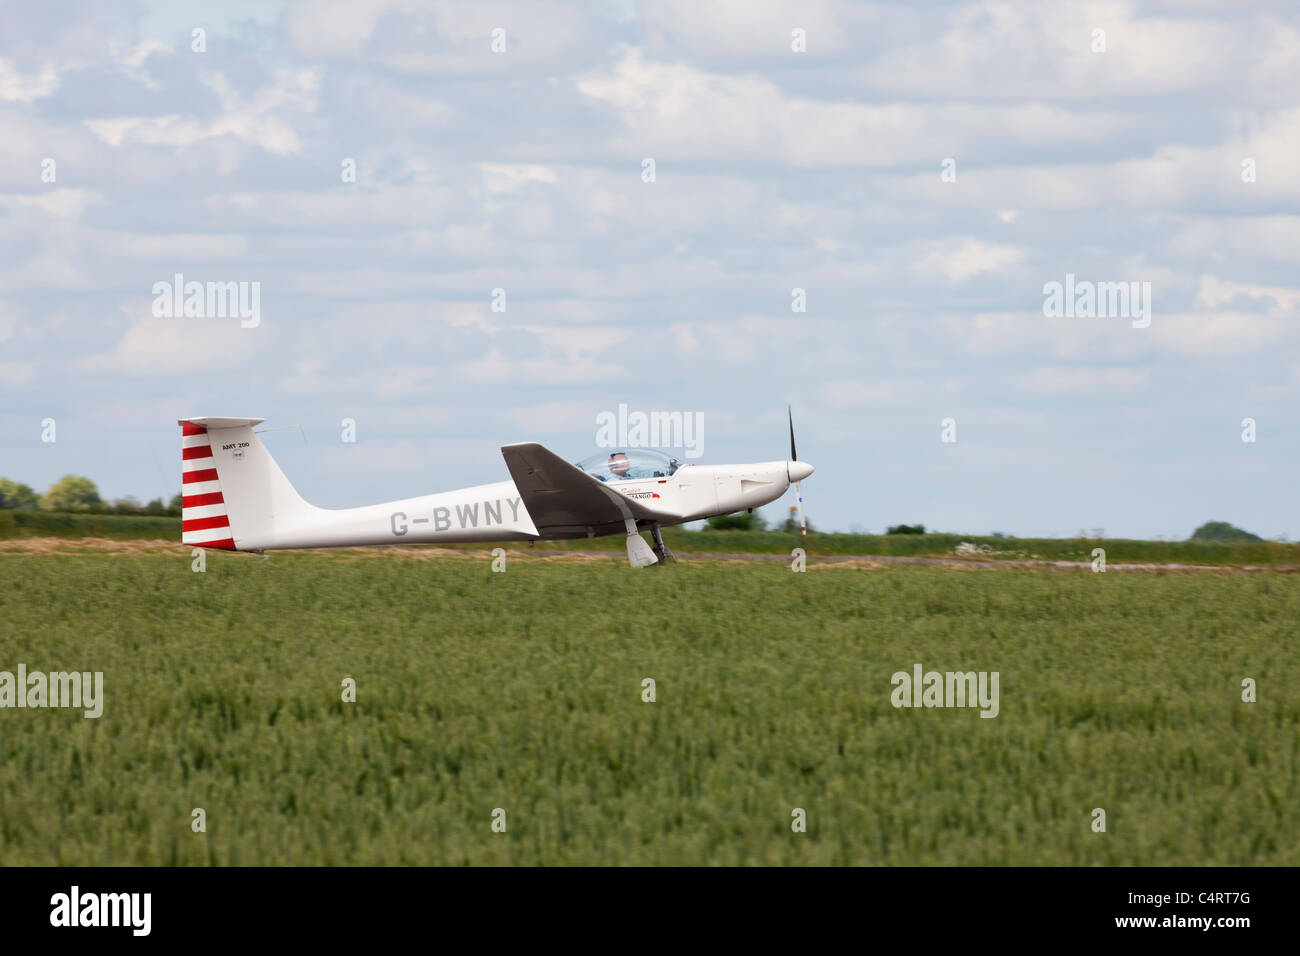 AMT Ximango Aeromot-200 Super G-BWNY aterrizar en aeródromos Sturgate Foto de stock